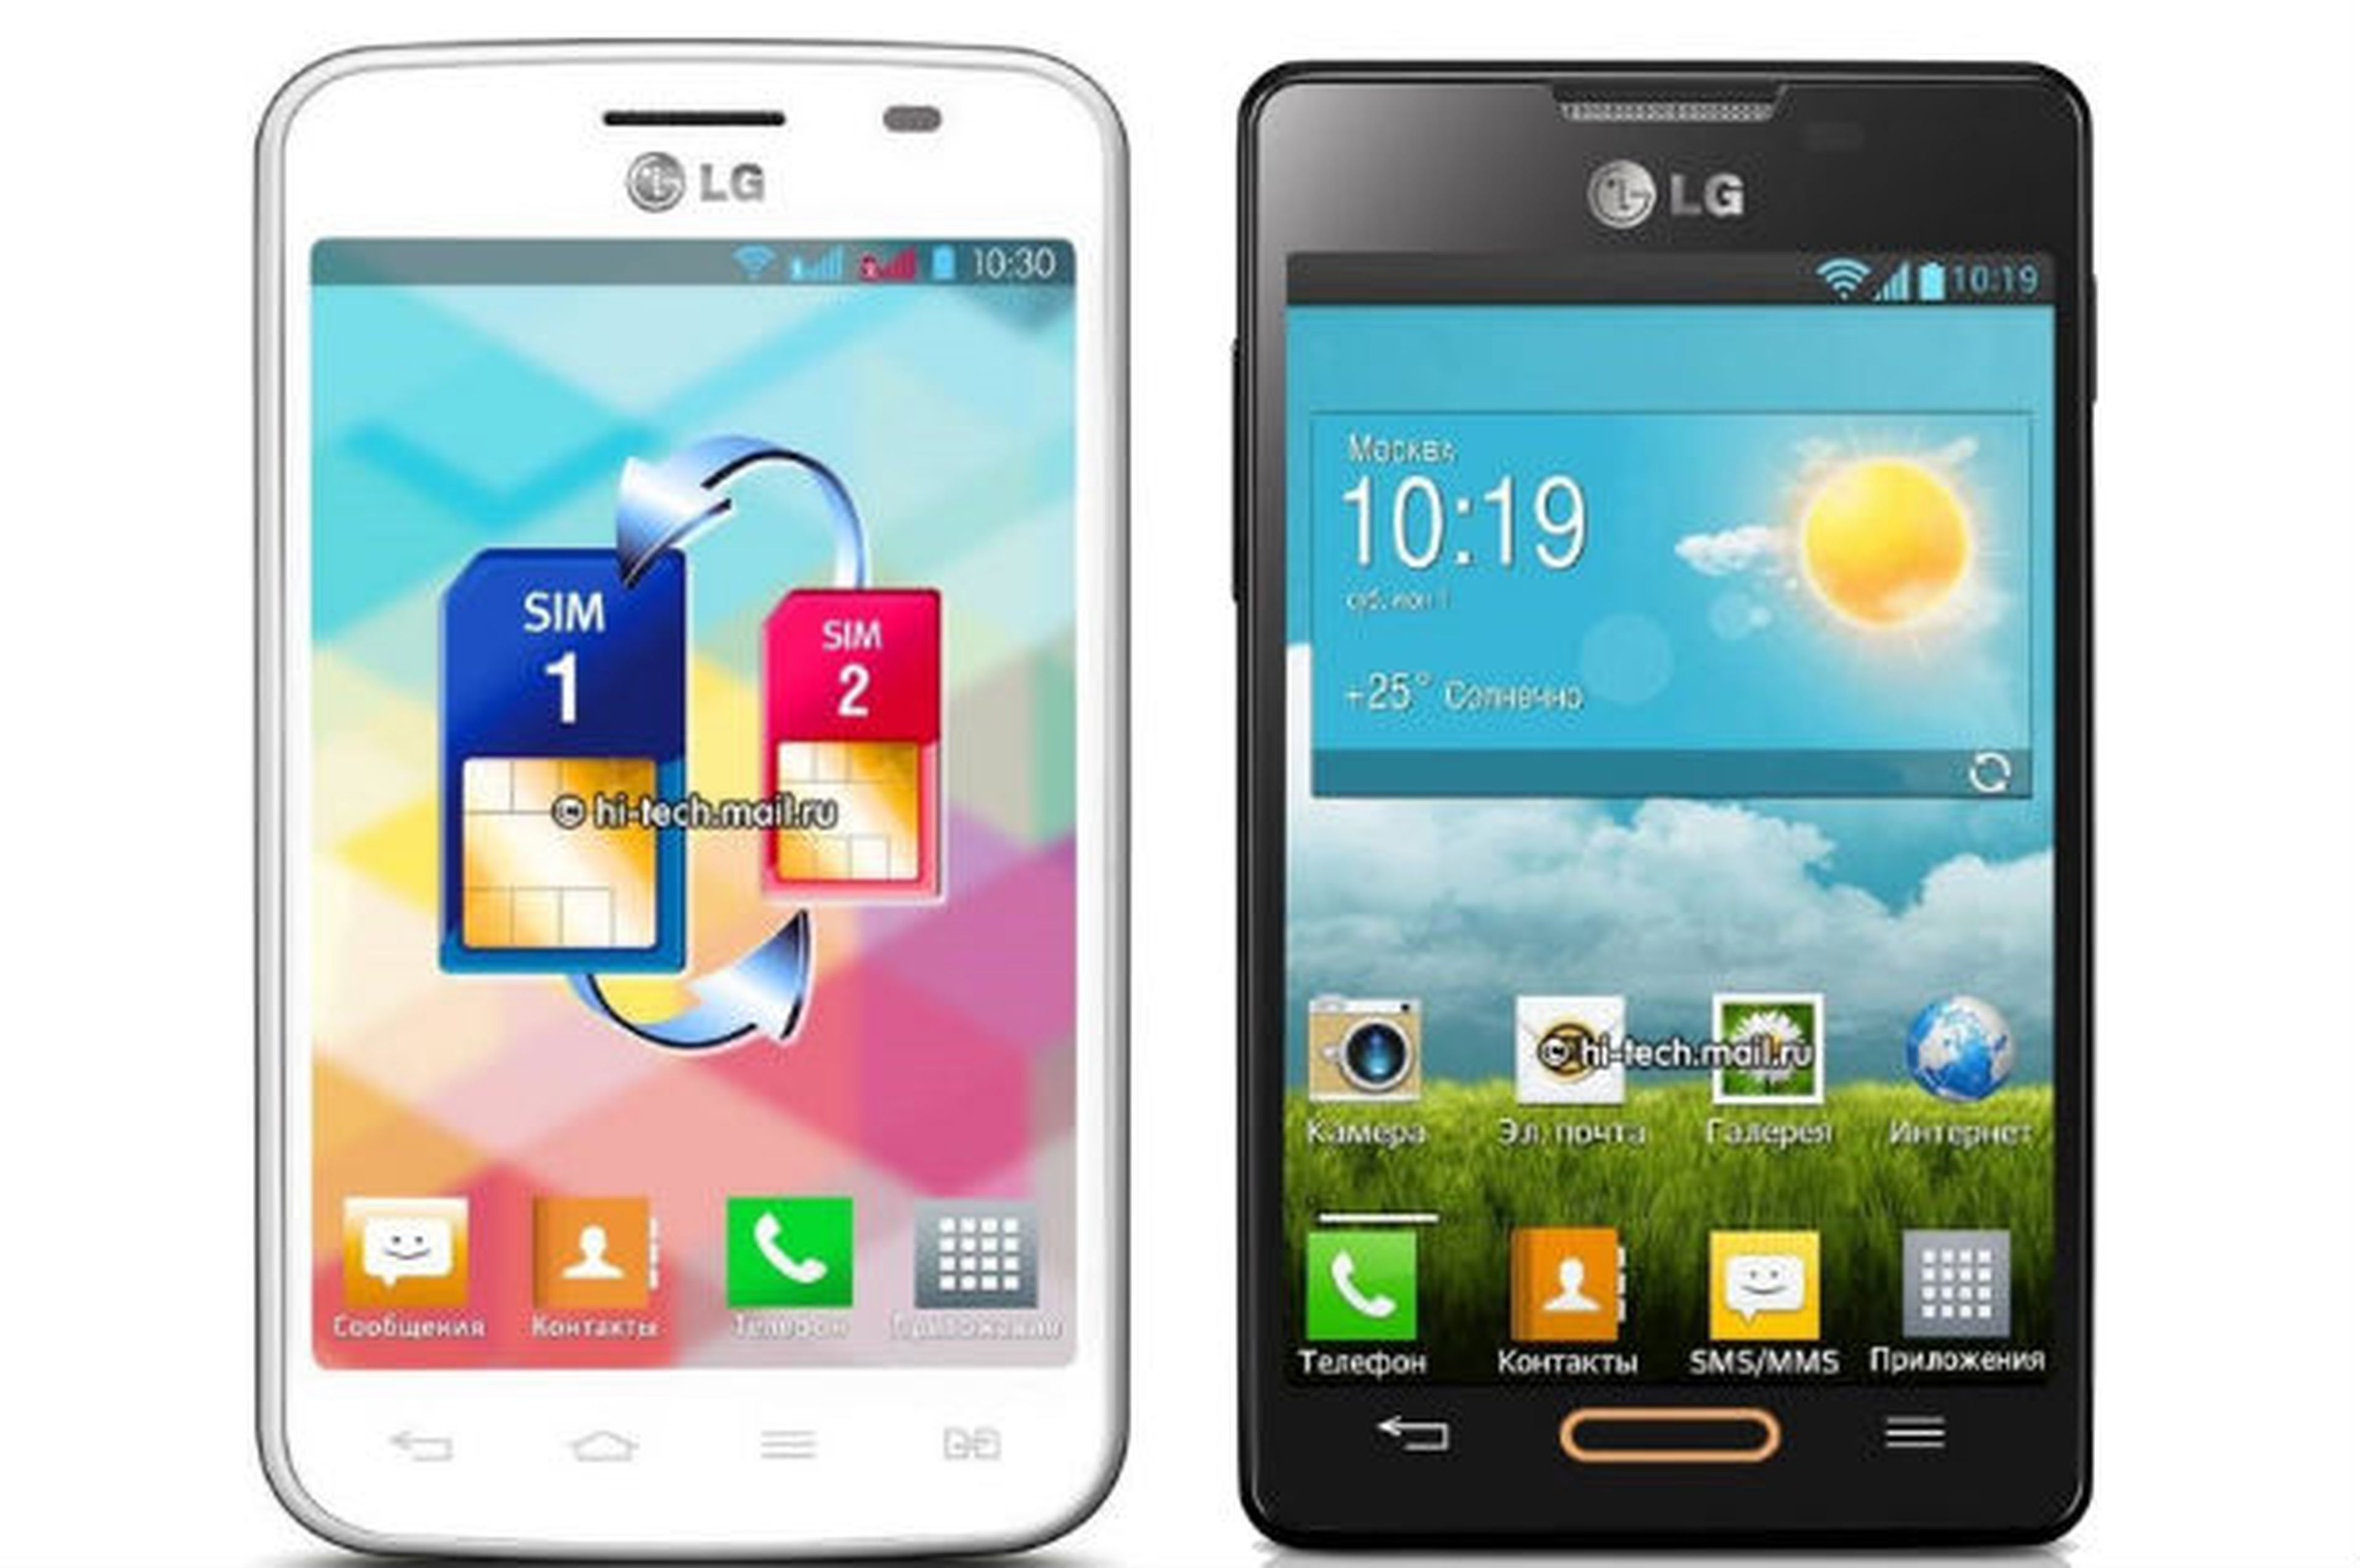 LG Optimus L4 y LG Optimus L4 Dual SIM